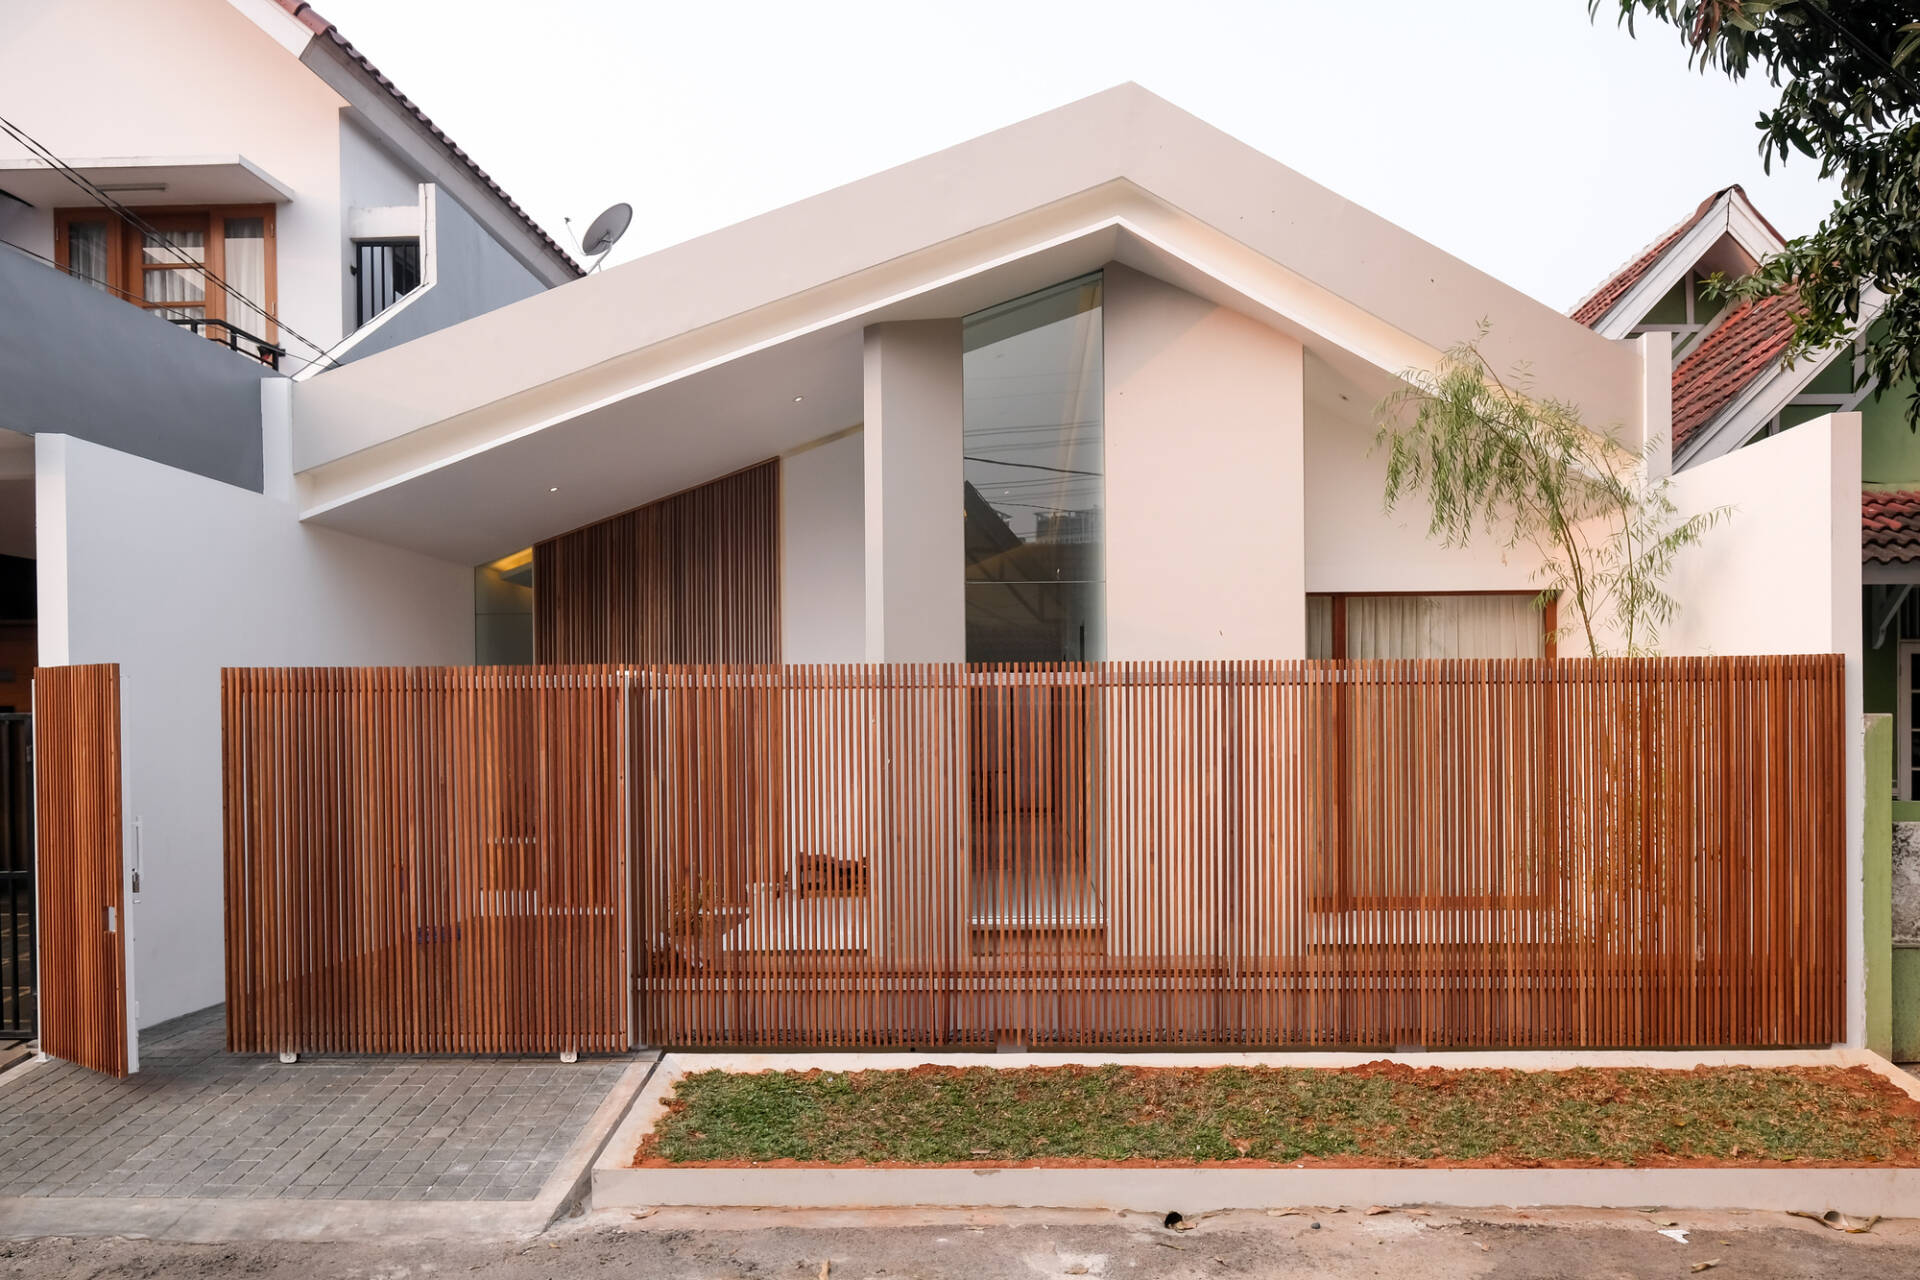   DG House nằm trong khu  nhà liền kề  ở Indonesia nhưng sở hữu diện mạo hiện đại, mới lạ hơn so với những ngôi nhà xung quanh.   